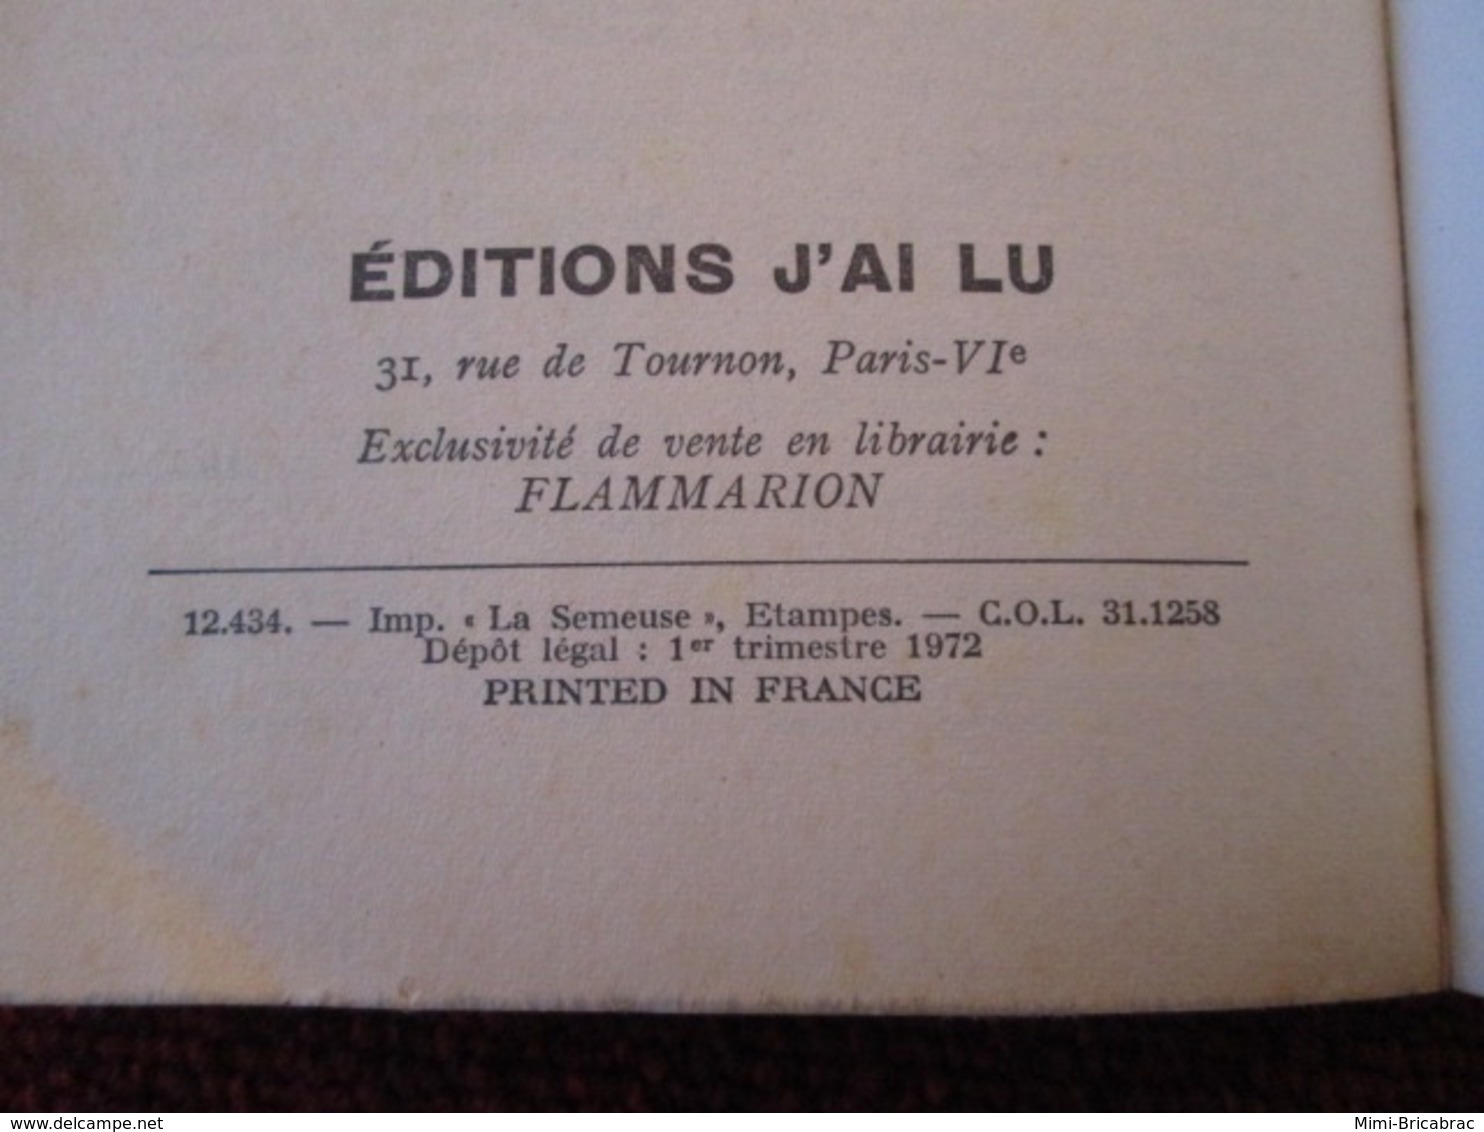 POL2013/1 : ANTHONY MORTON / J'AI LU N°385  / LE BARON EST BON PRINCE édition De 1972 - J'ai Lu